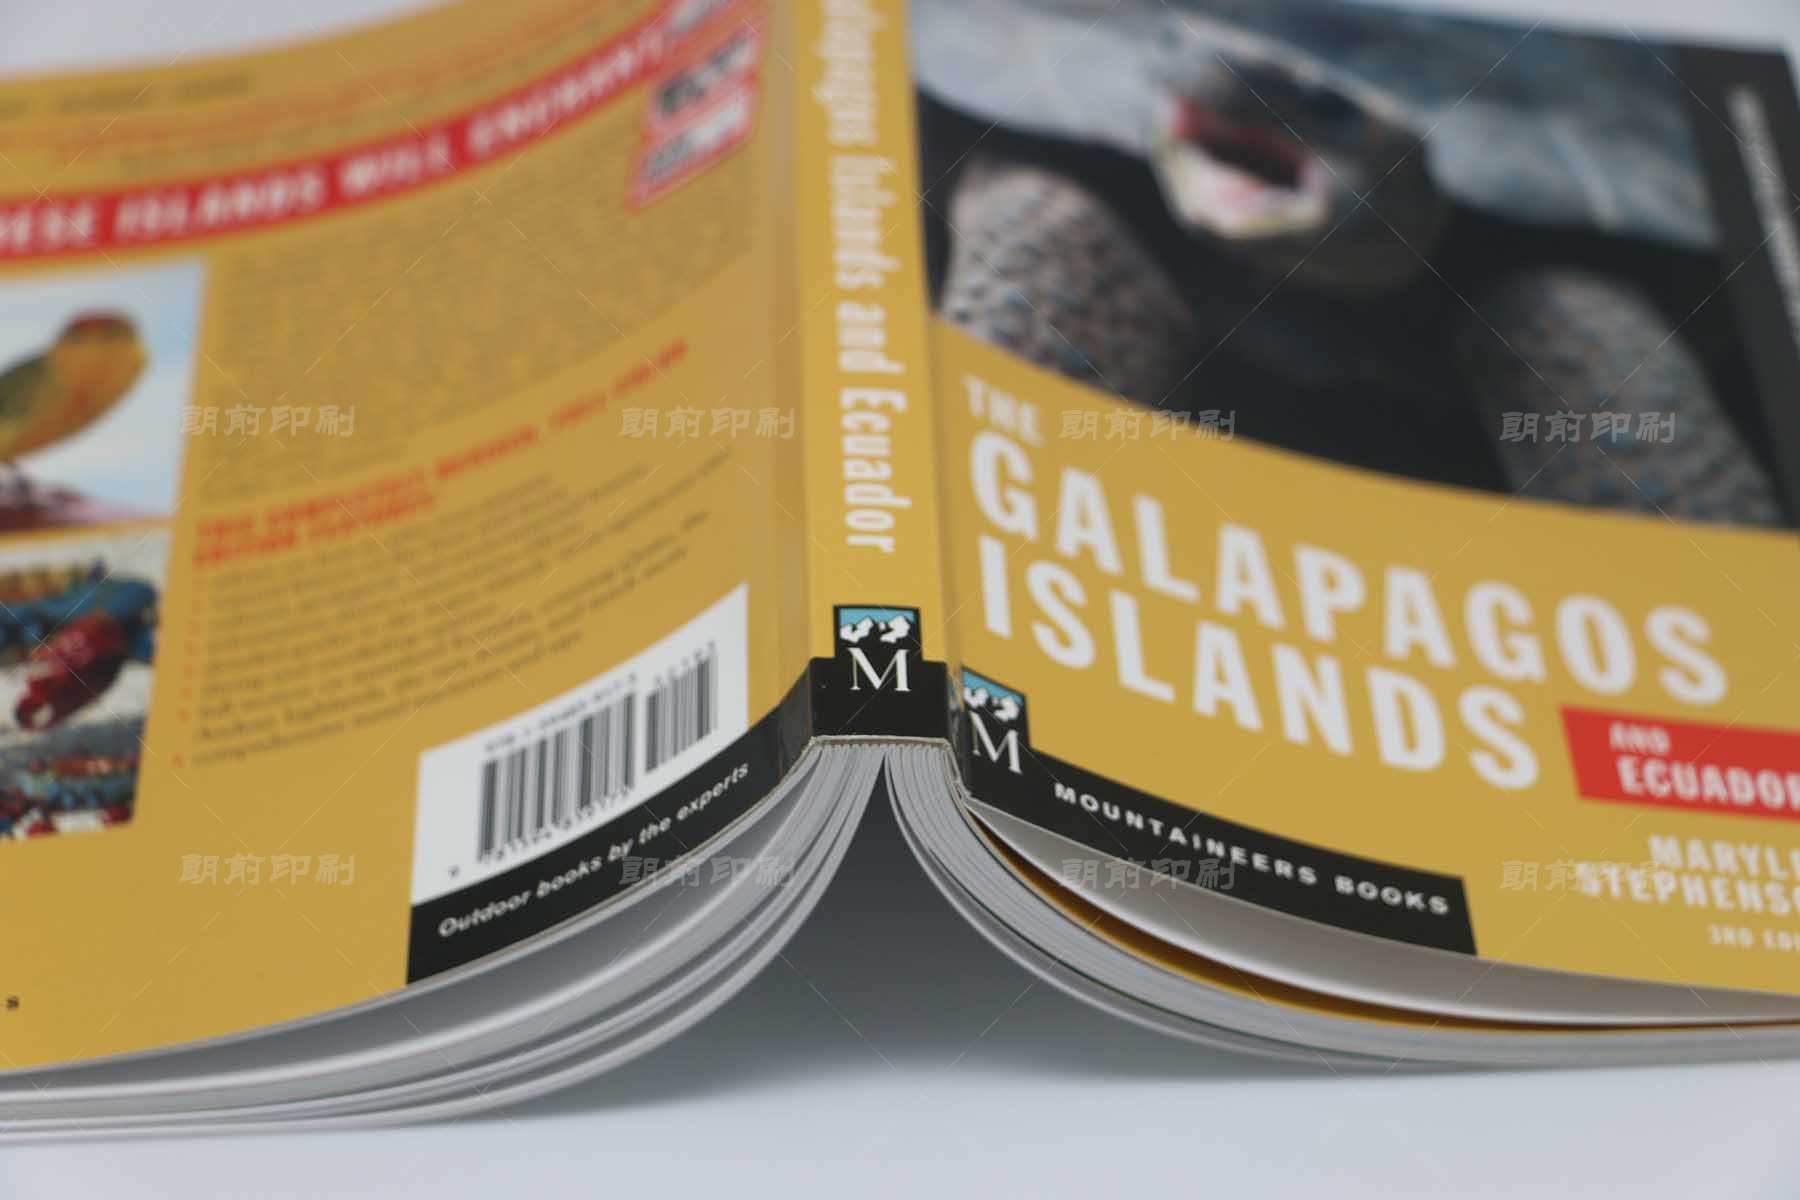 加拉帕戈斯群岛 锁线胶装书印刷